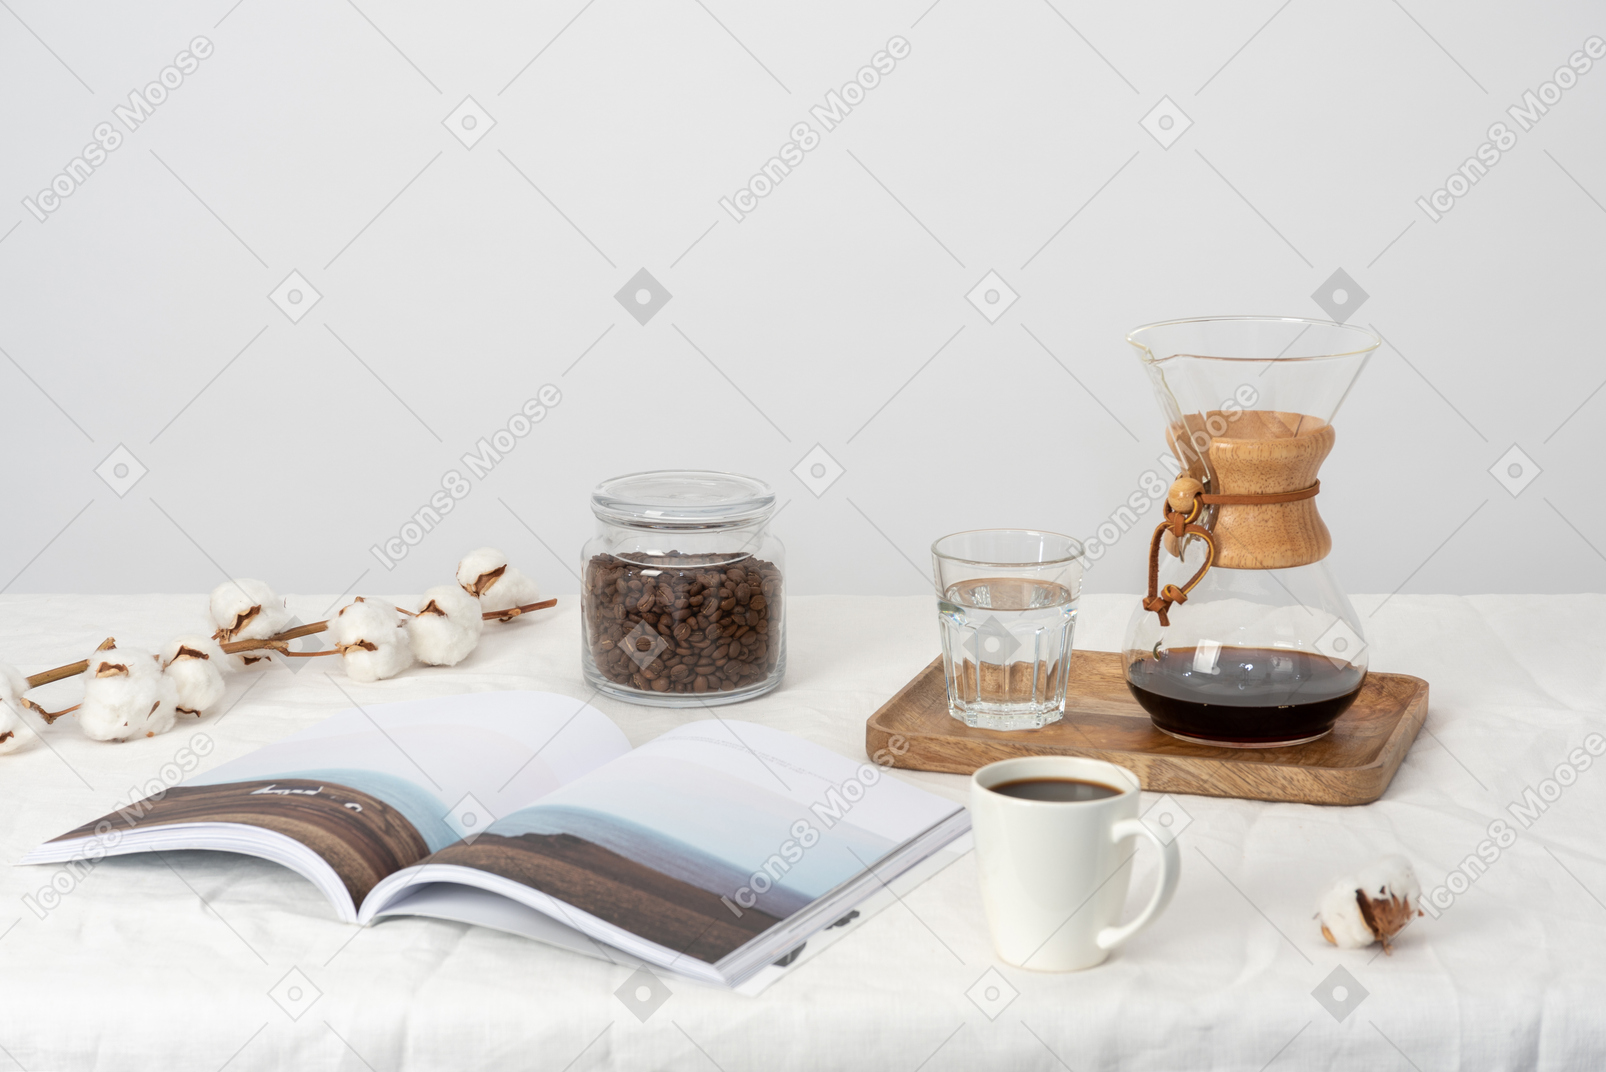 トレイの上のケメックスとコップ一杯の水、大きなコップ一杯の水、コーヒー豆の入った瓶、magazibeと綿の枝